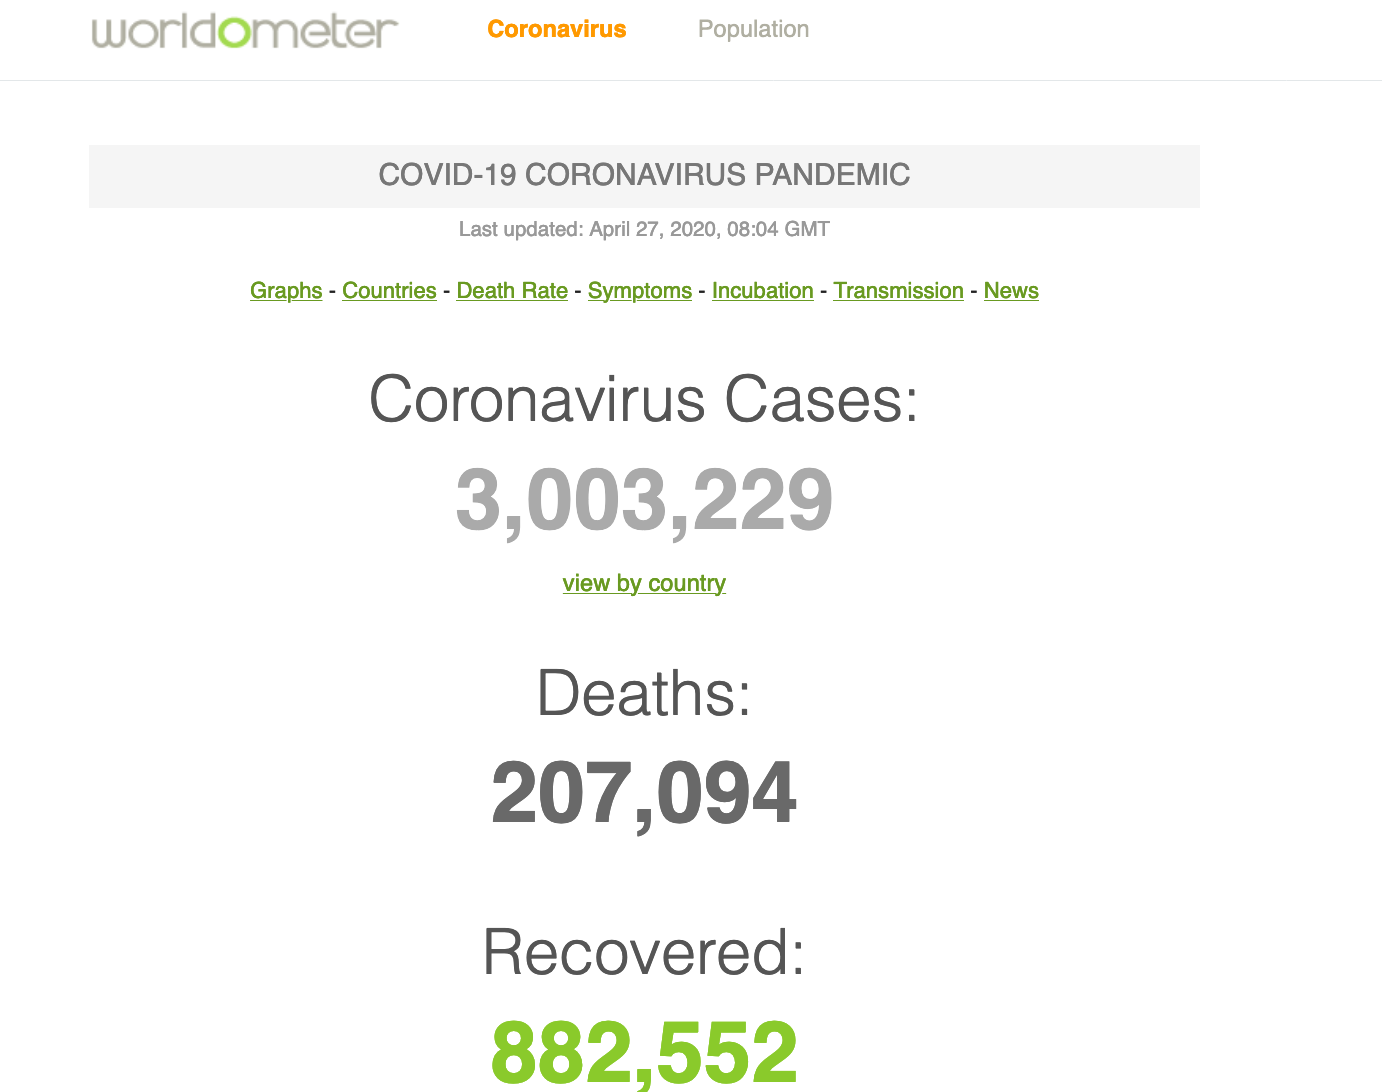 Https worldometers info. Worldometers coronavirus. Worldometers.